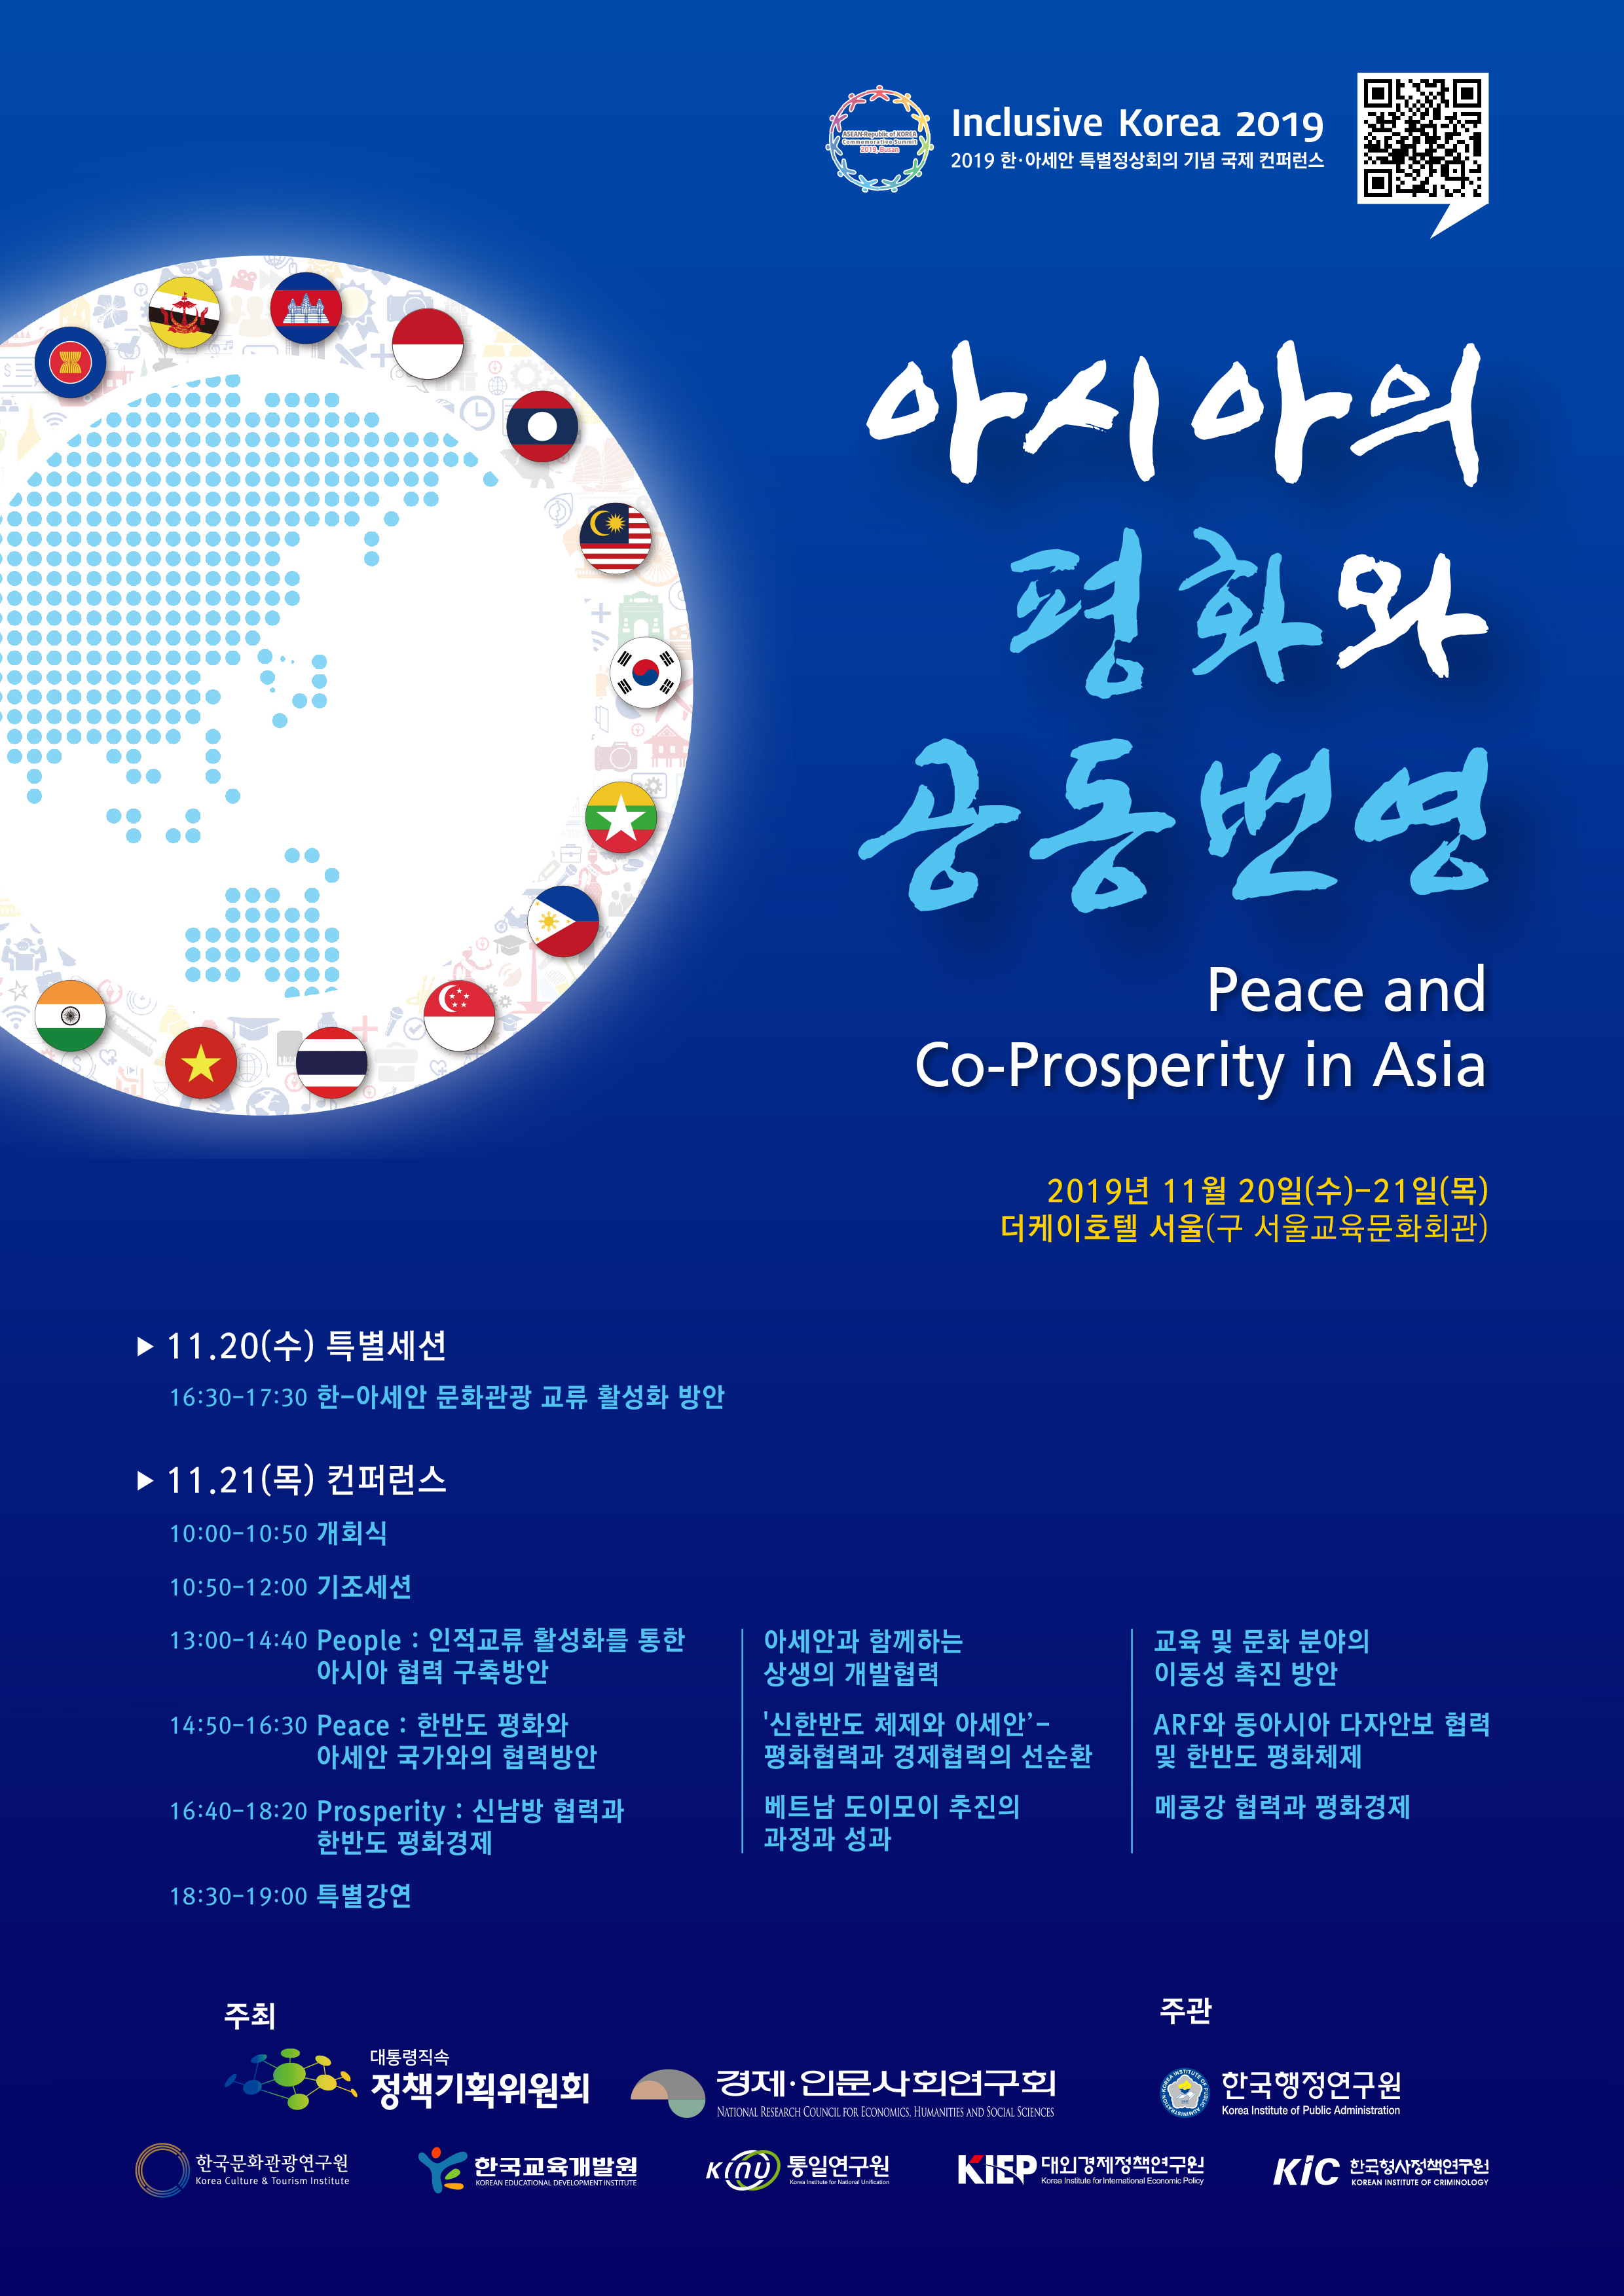 'Inclusive Korea 2019 - 아시아의 평화와 공동번영 컨퍼런스' 개최 안내입니다. 자세한 사항은 아래의 글을 참조해주세요.